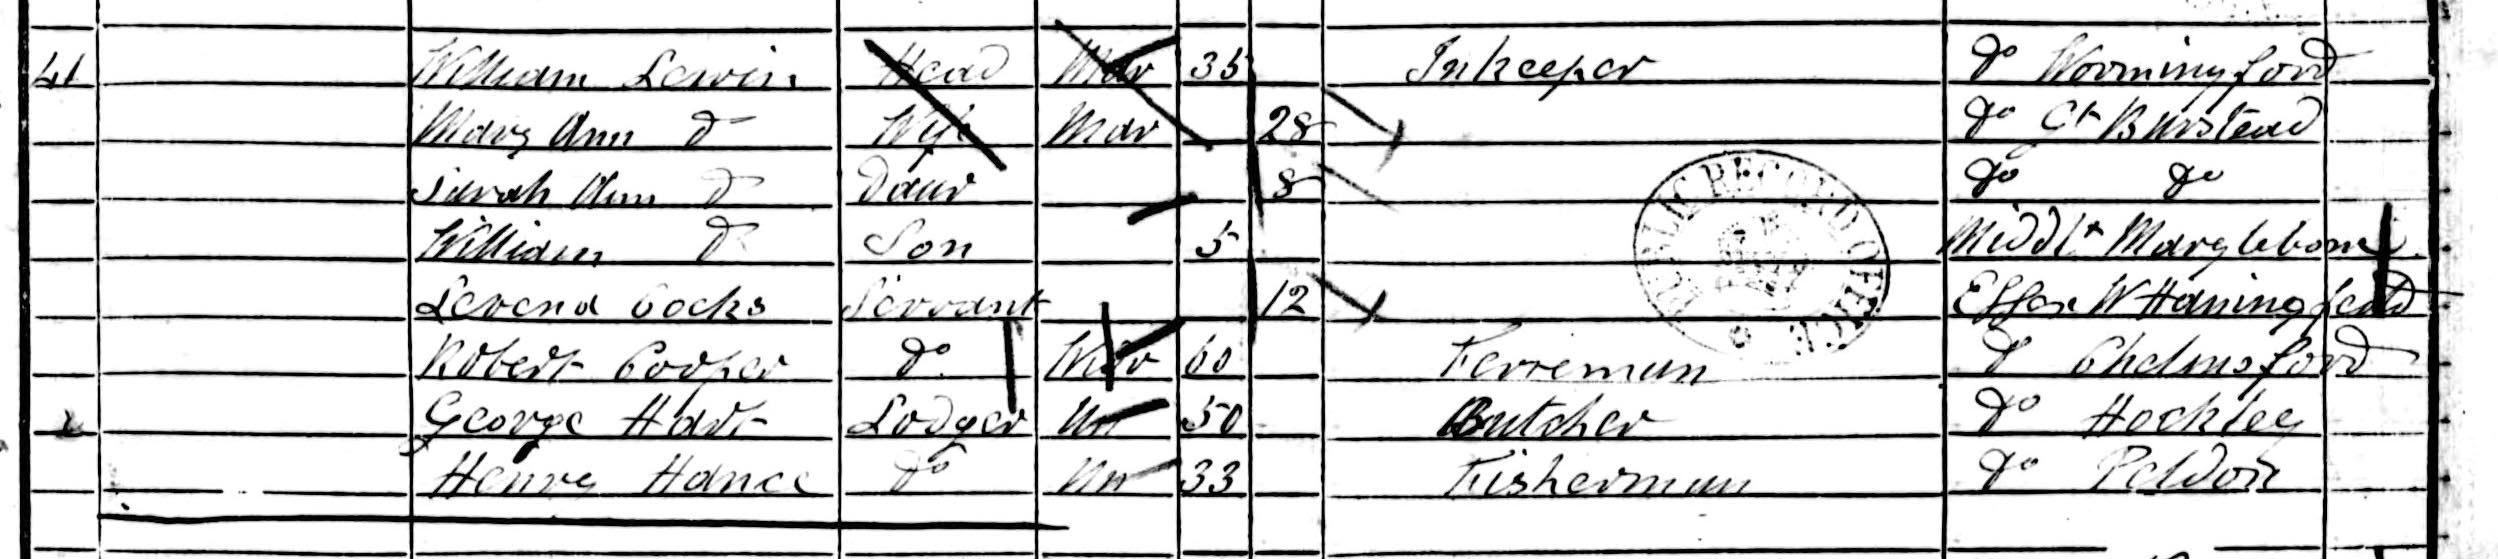 1851 census, Hullbridge.